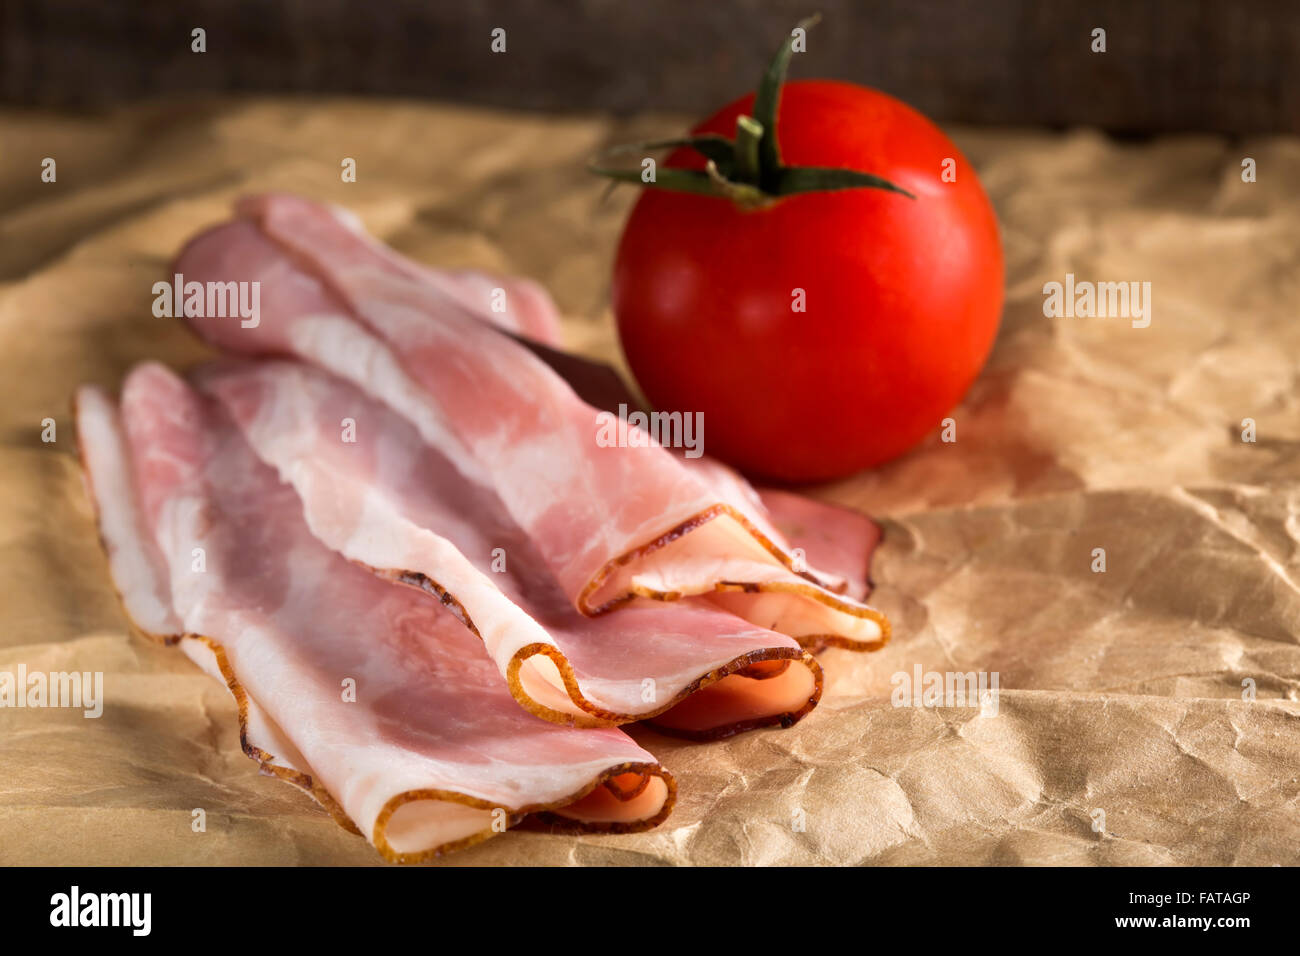 Close-up de certains bacon appétissante sur papier et une tomate cerise Banque D'Images